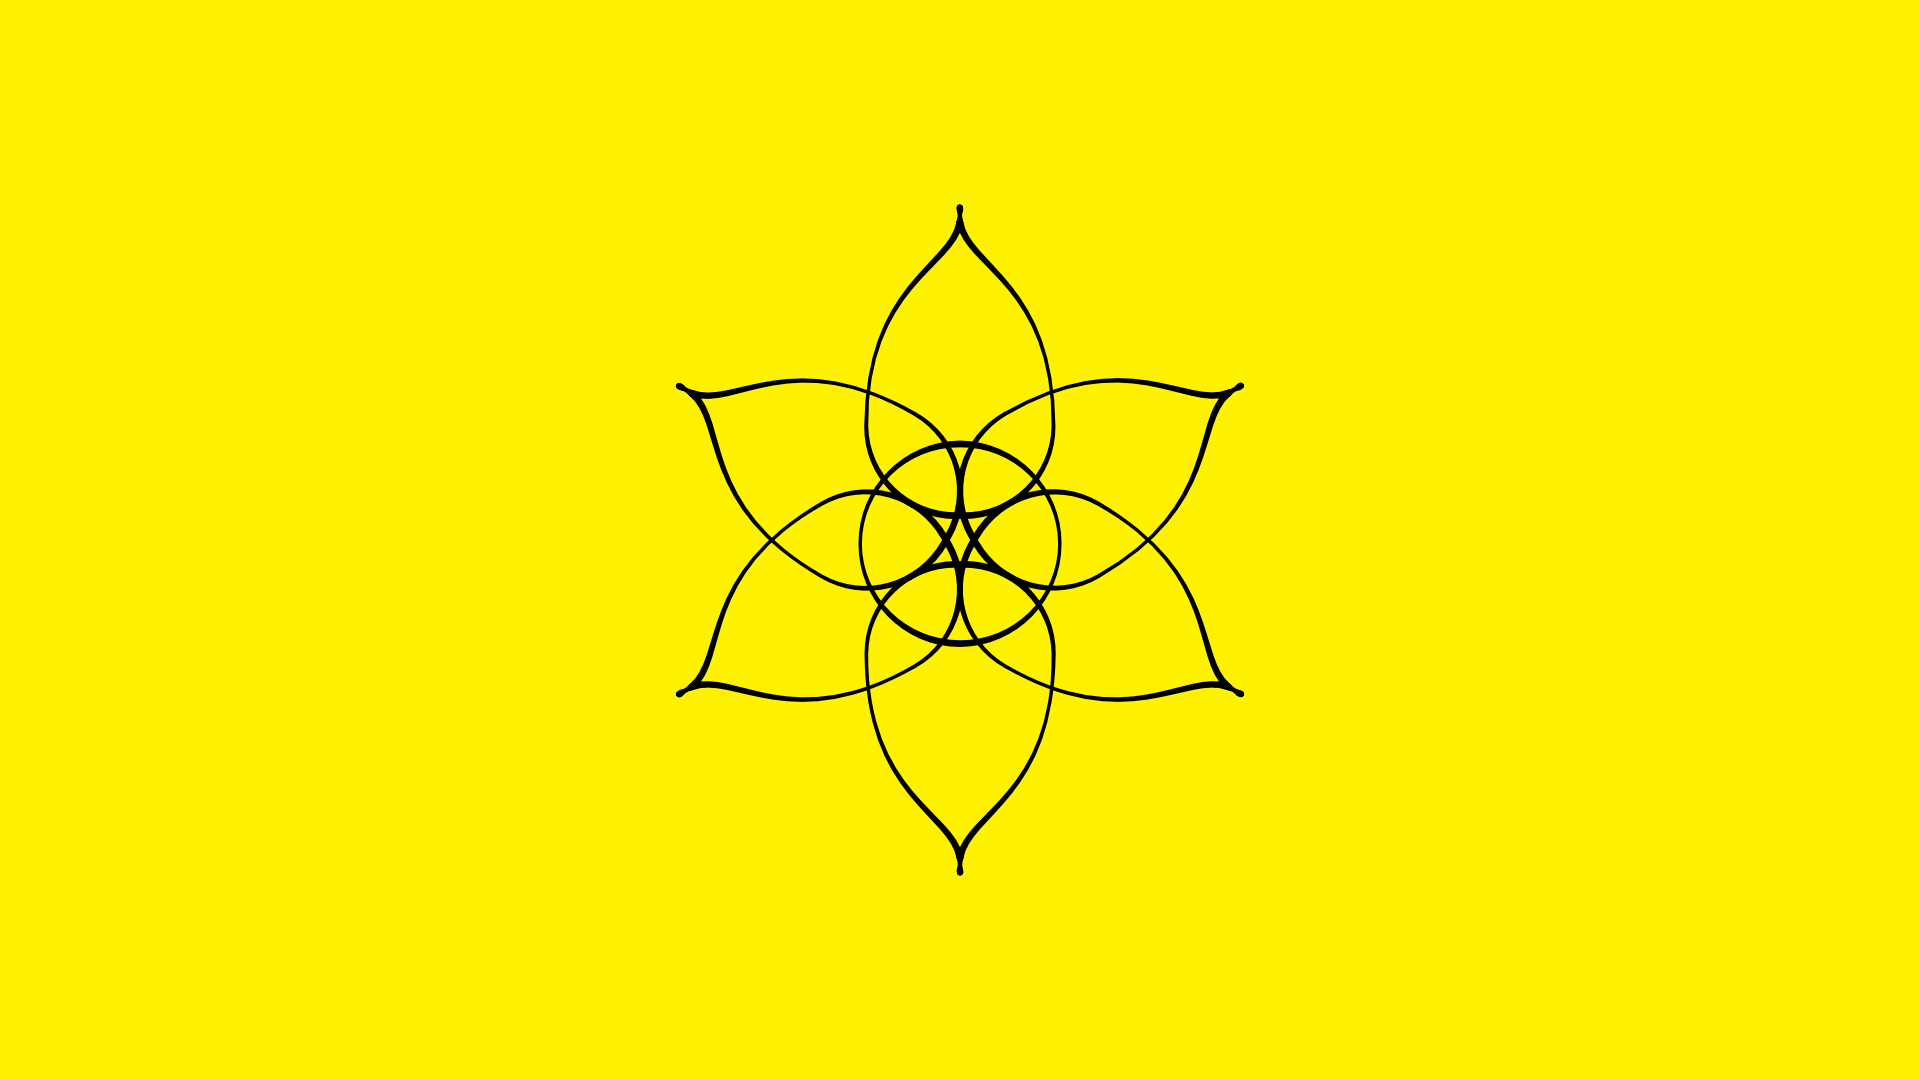 Czarna abstrakcyjna ilustracja narcyza na żółtym tle